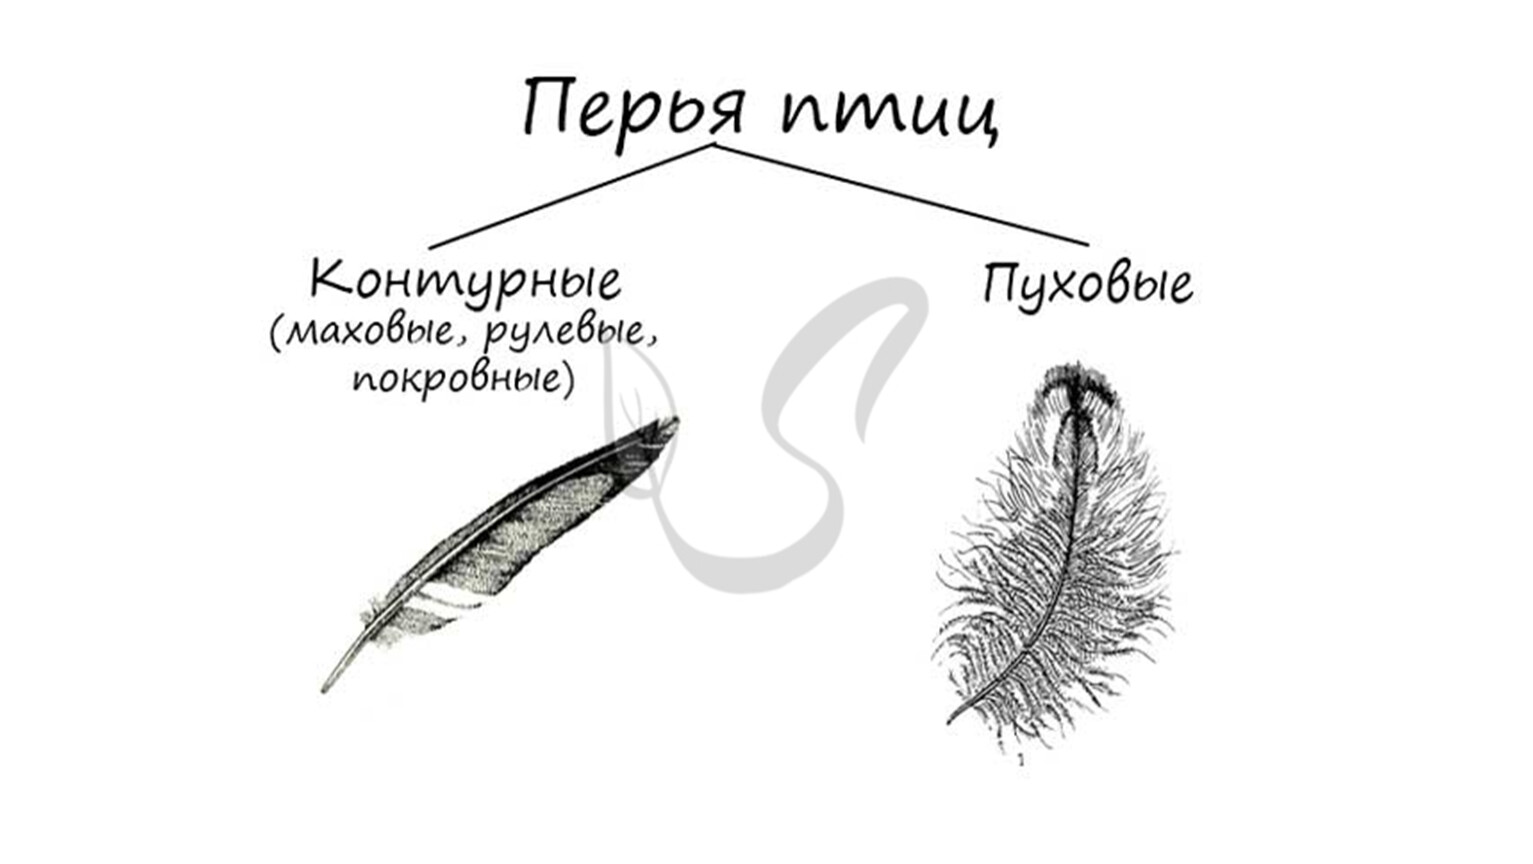 Рулевые перья у птиц